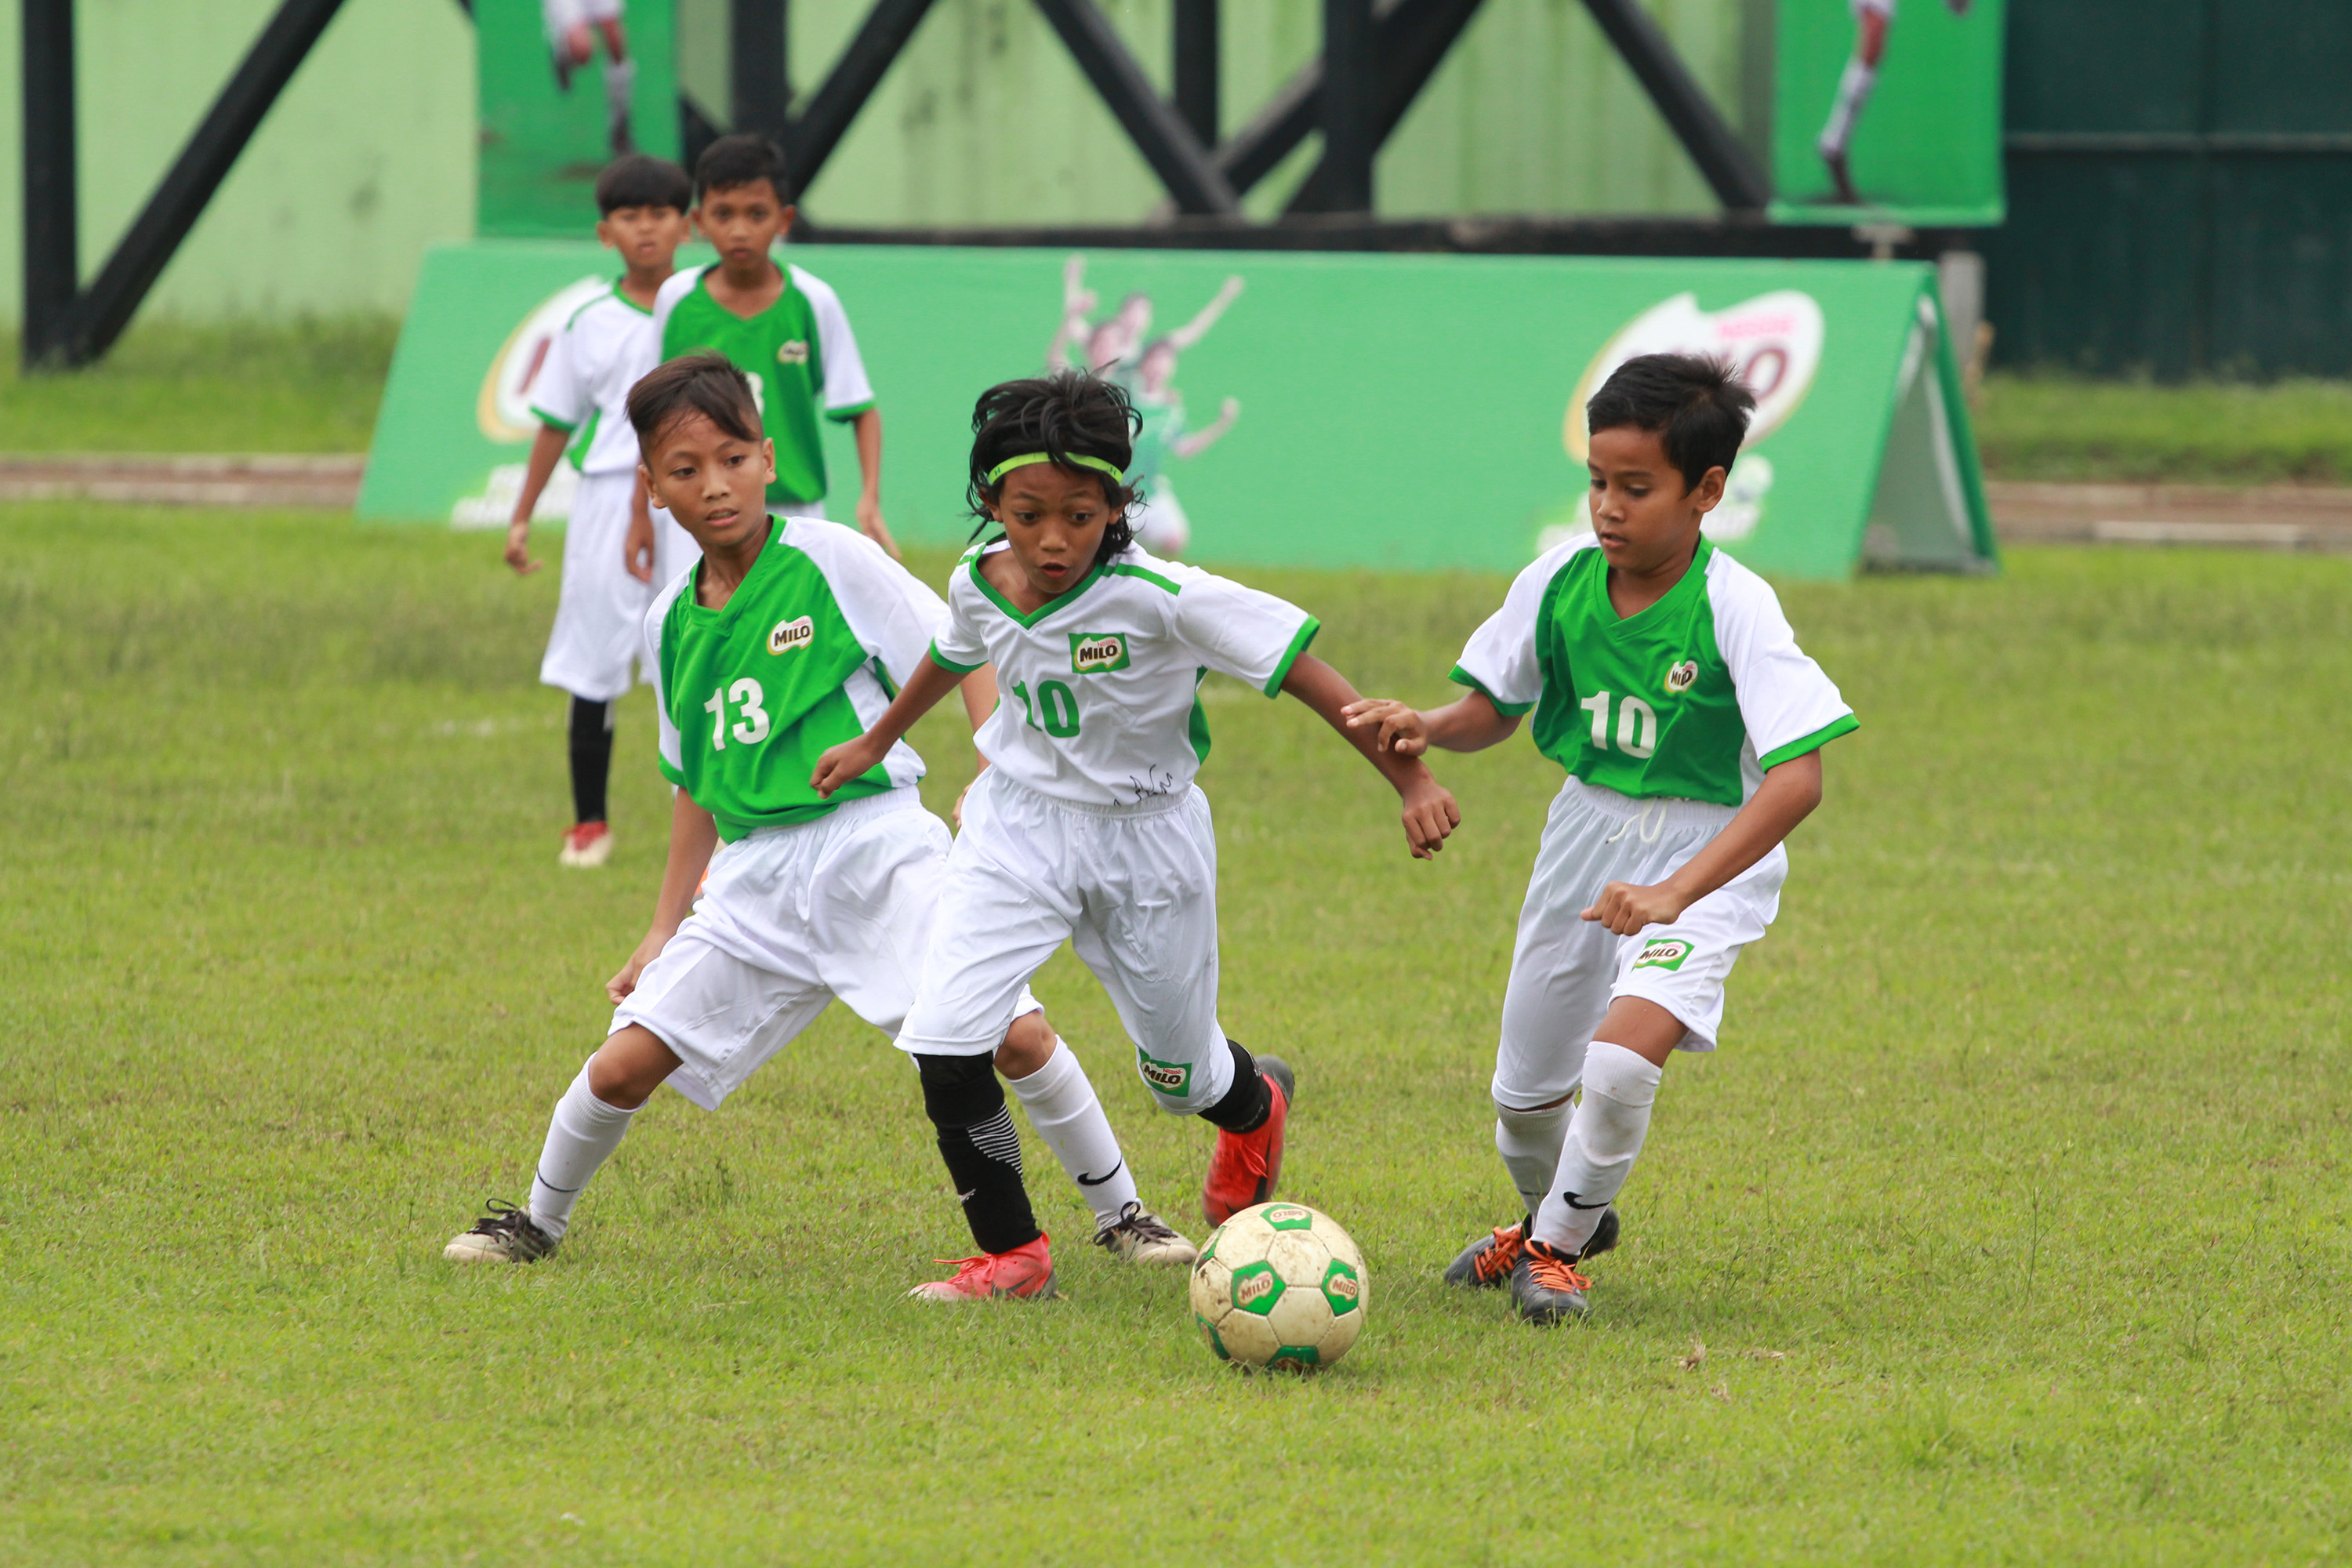 SDN Bandung Rejosari 1 Malang Juara MILO Football Championship 2019